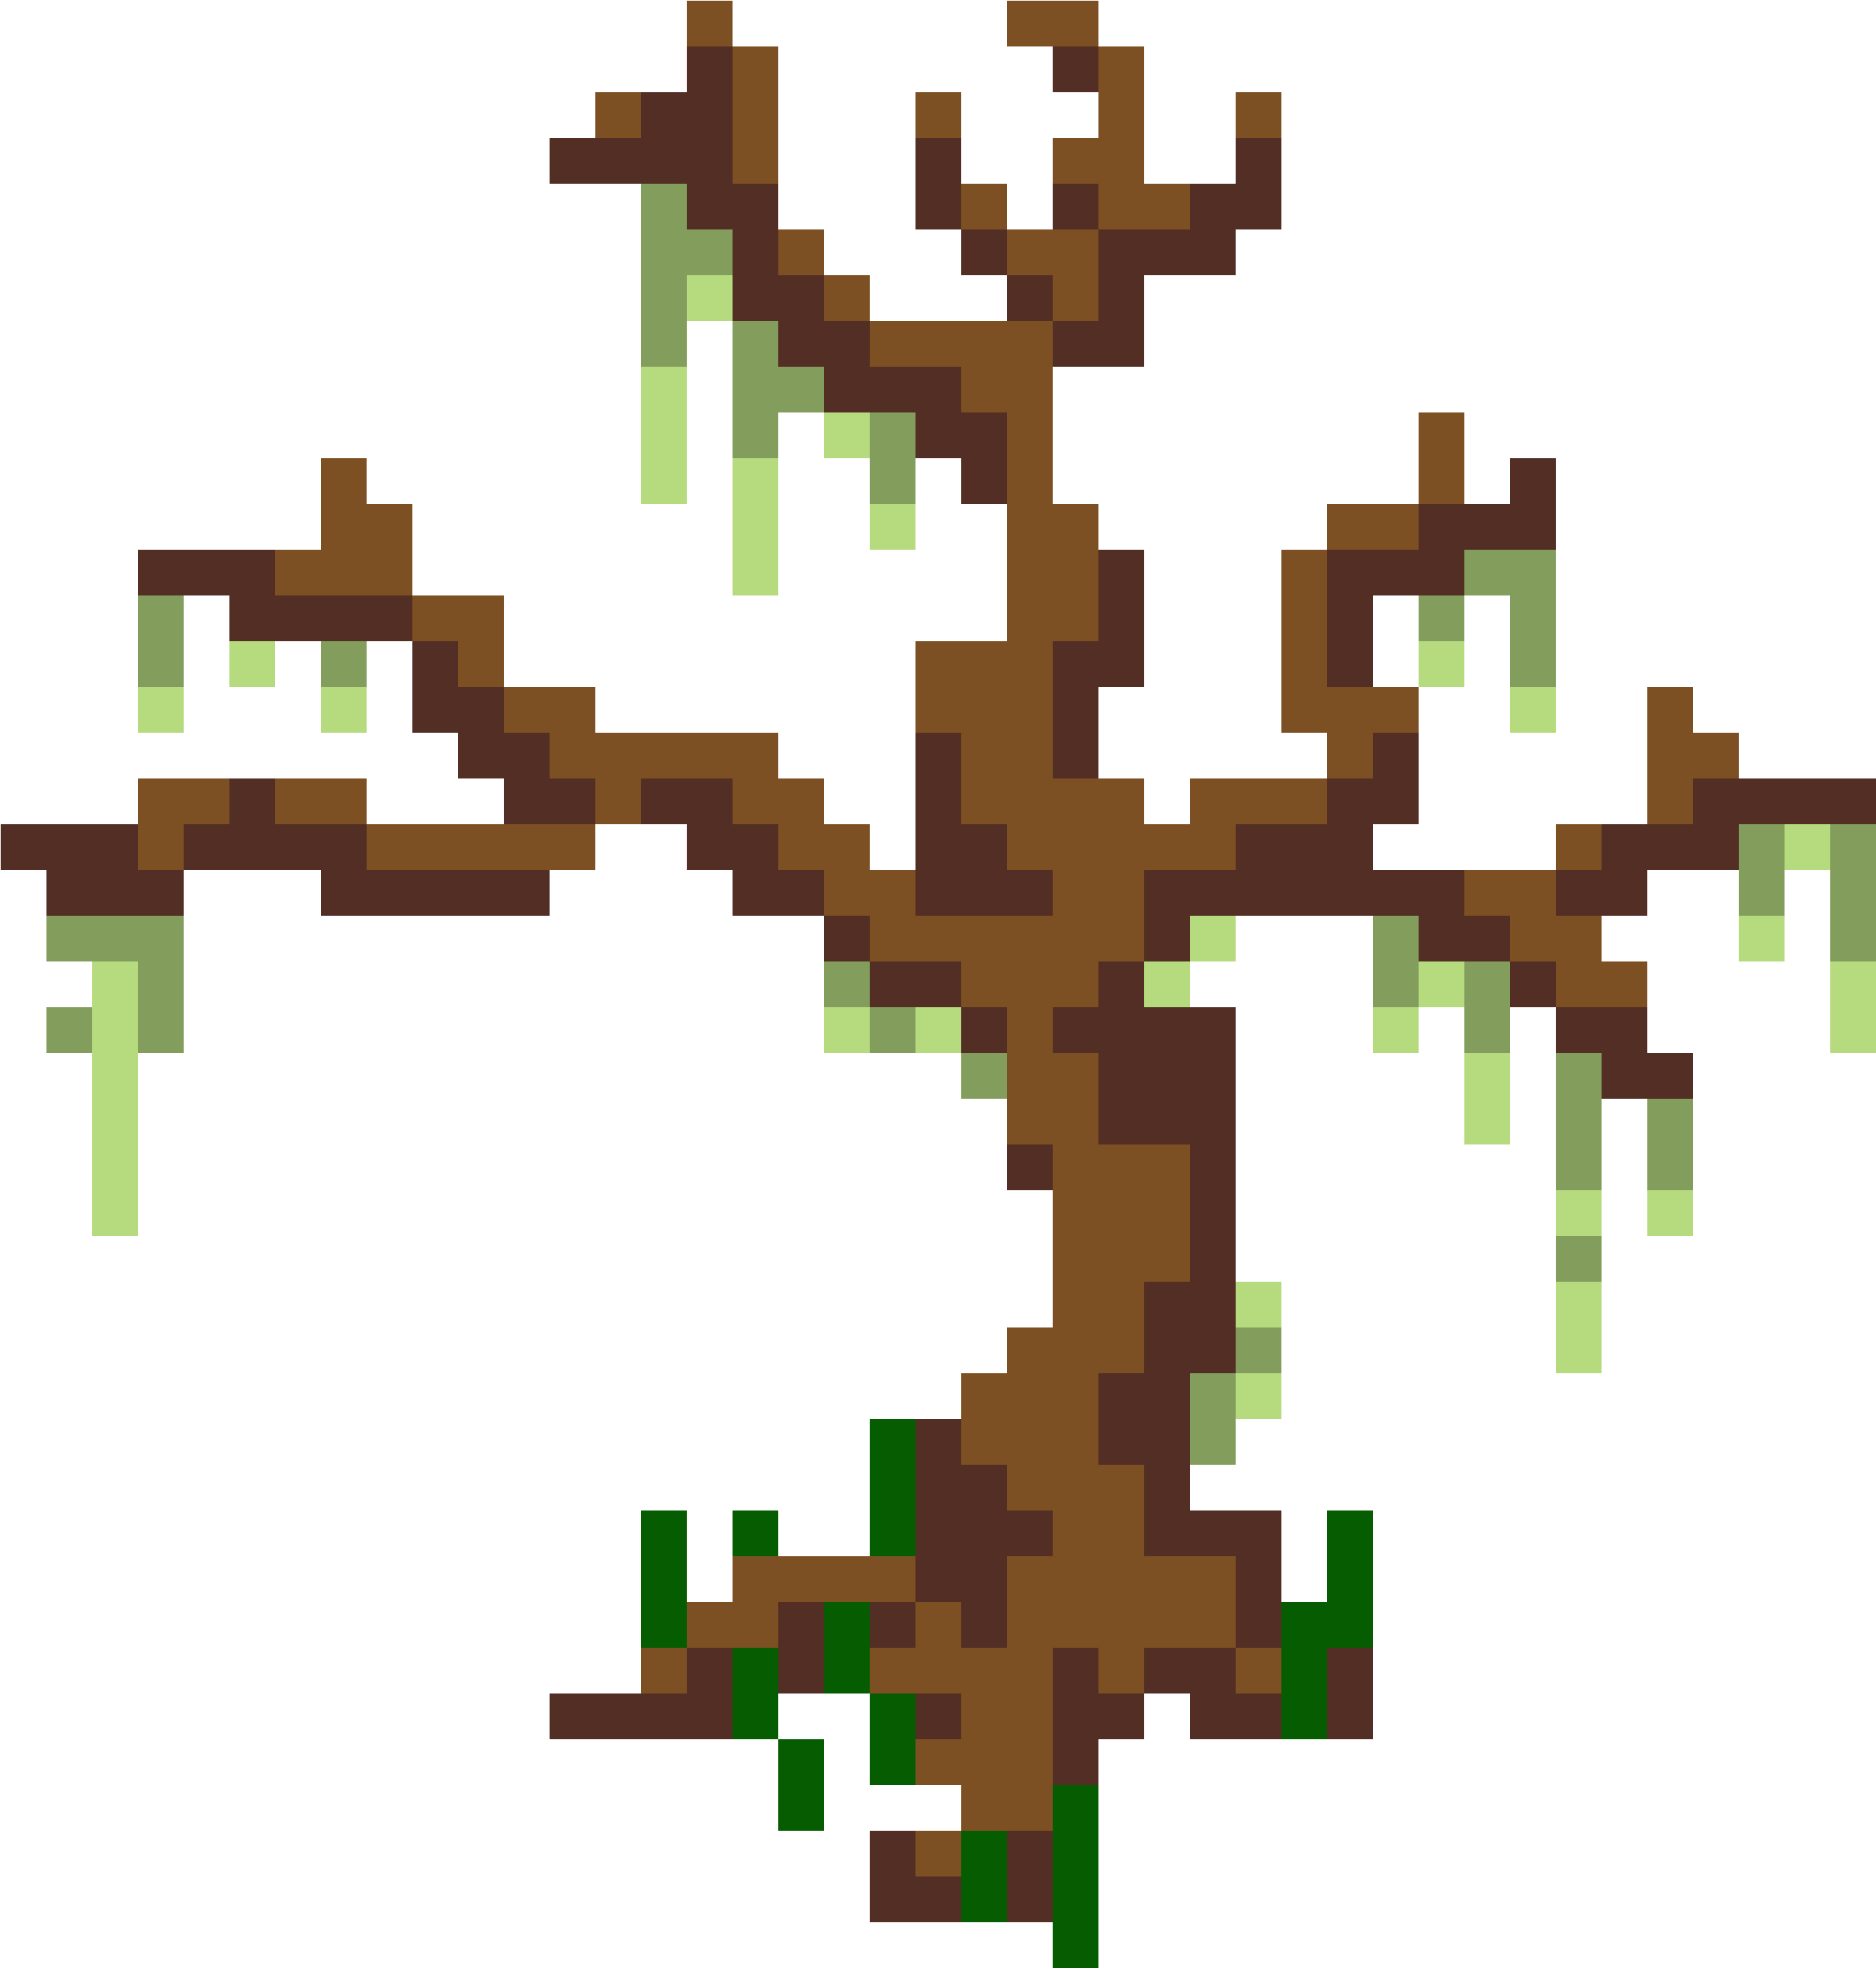 A Dead Tree - Dead Tree Pixel Art (3264x3328)